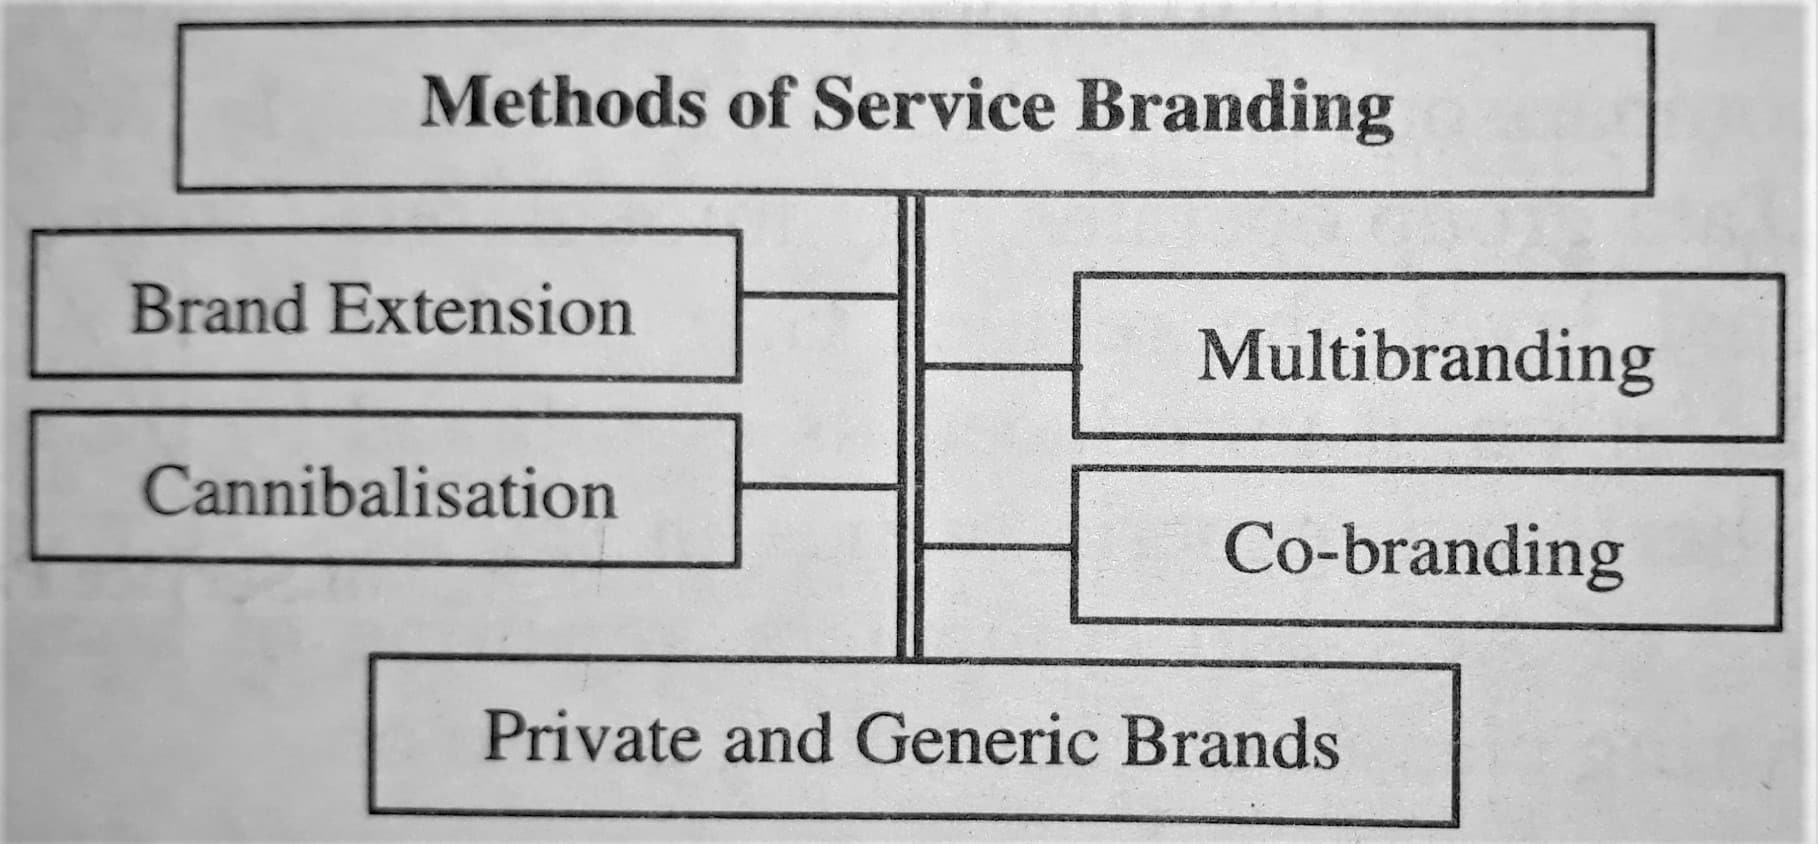 Methods of Service Branding